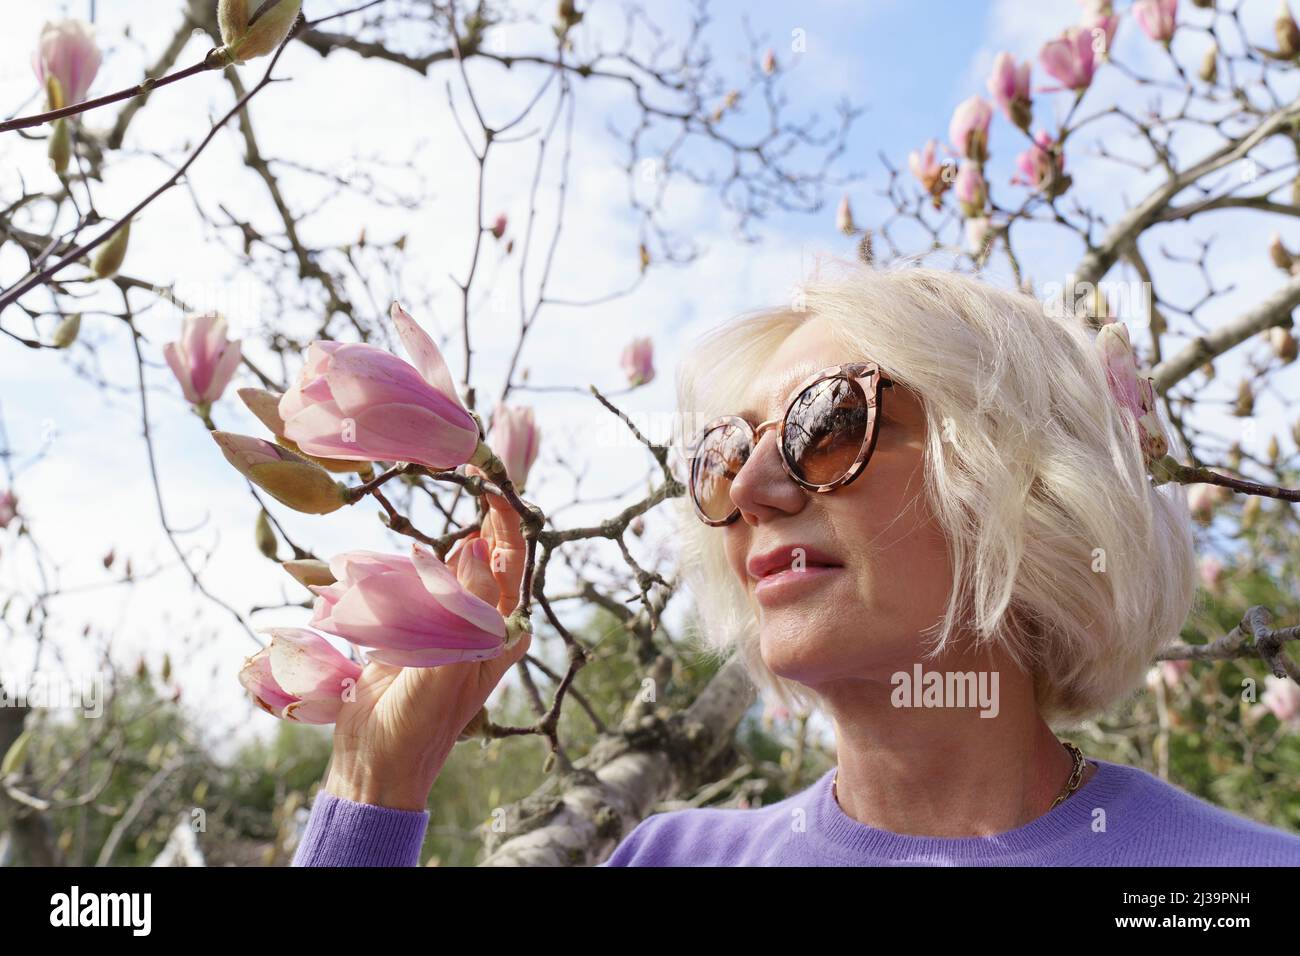 Porträt einer schönen Frau im Park bei einem Magnolienbaum. Stockfoto